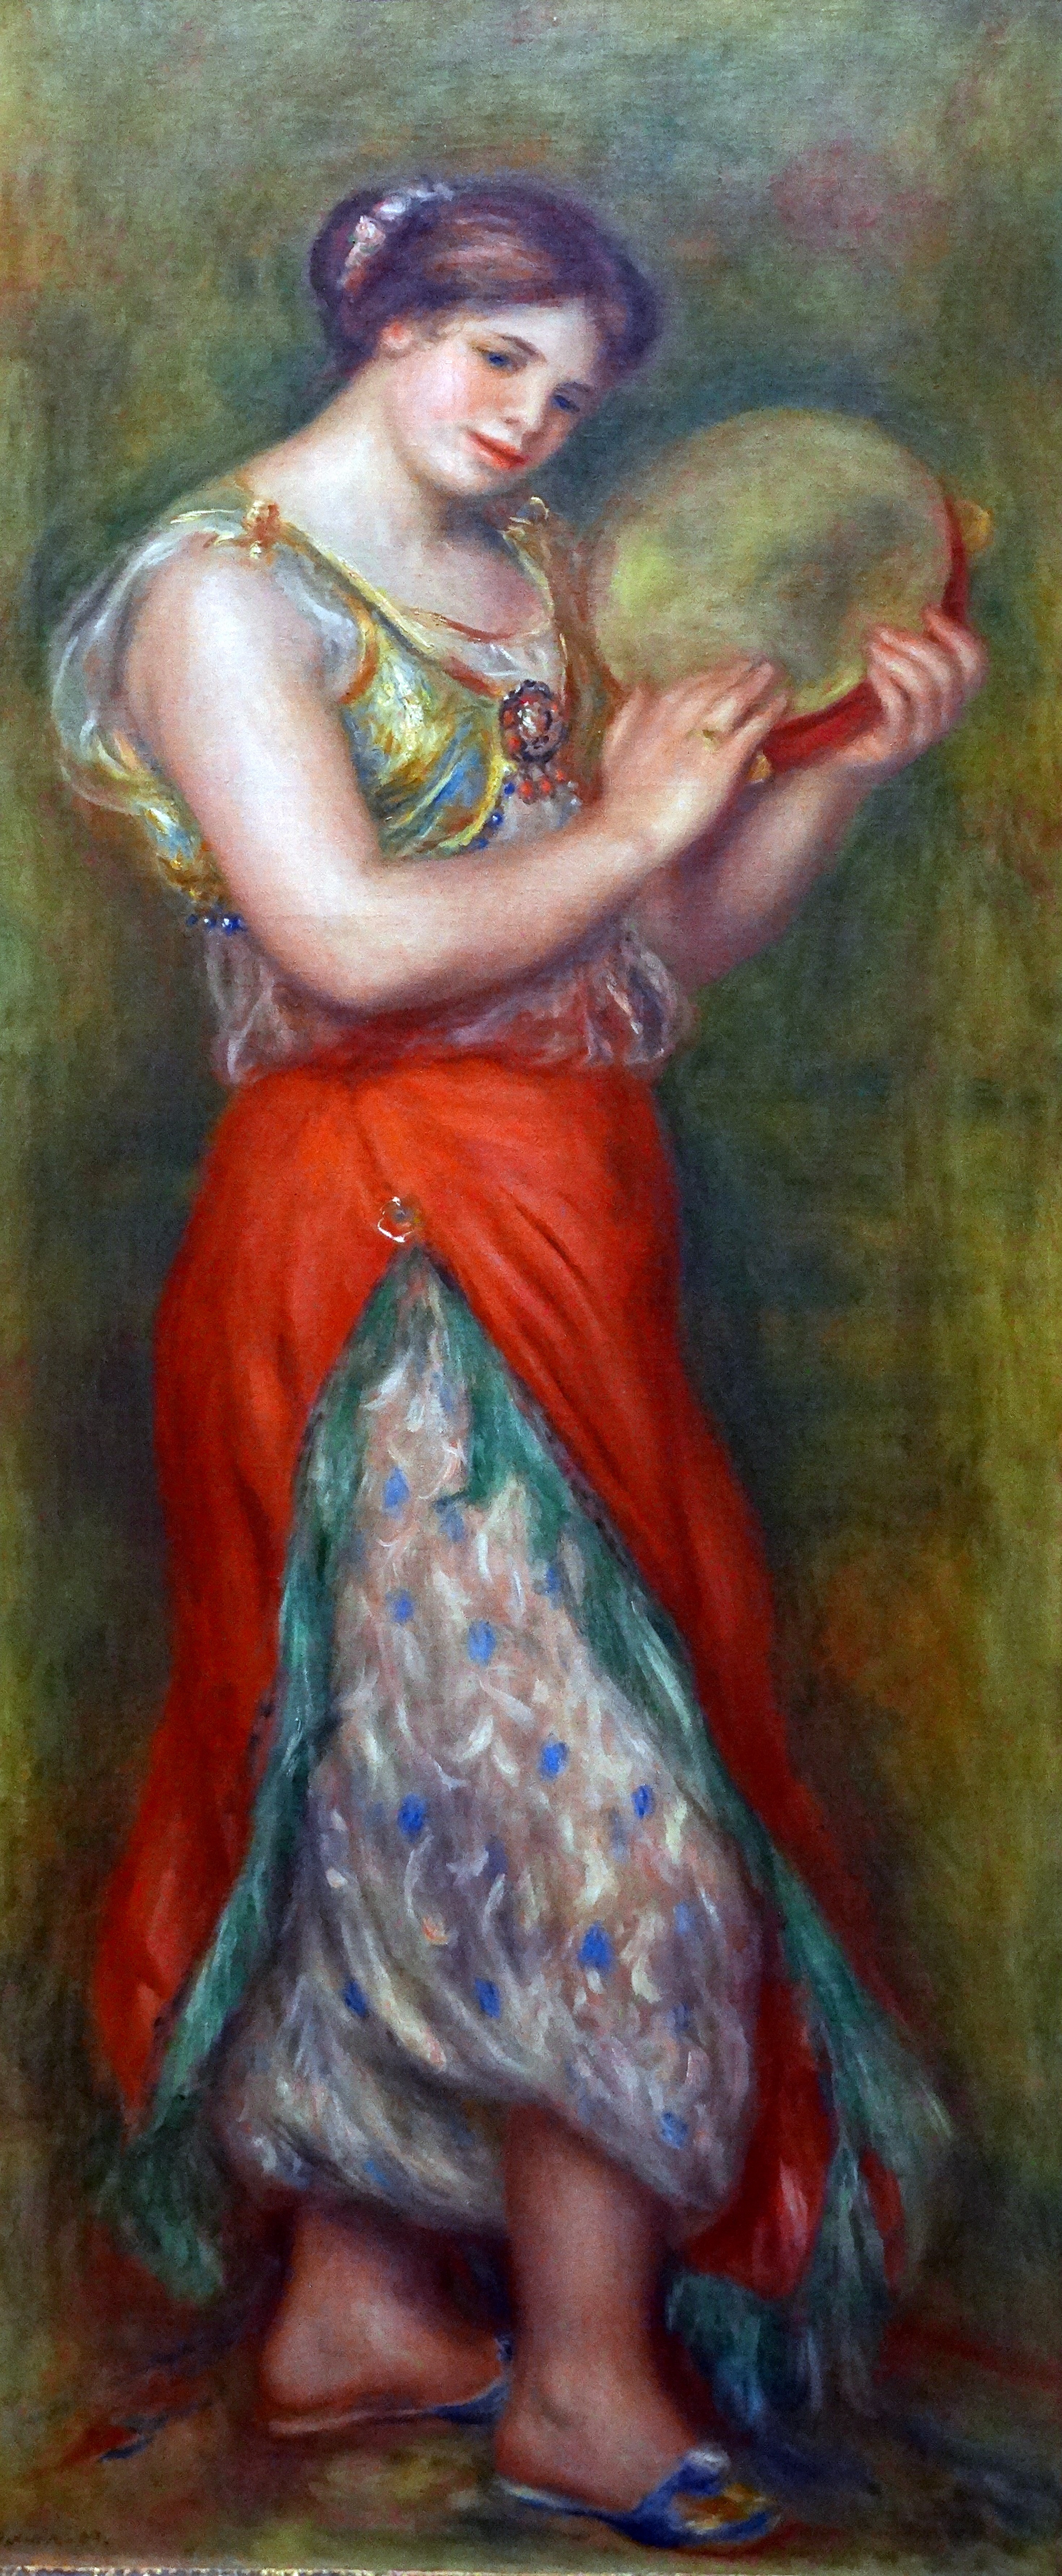 Danzatrice con tamburello, 1909. Olio su tela, 155 x 64,8 cm. The National Gallery, Londra